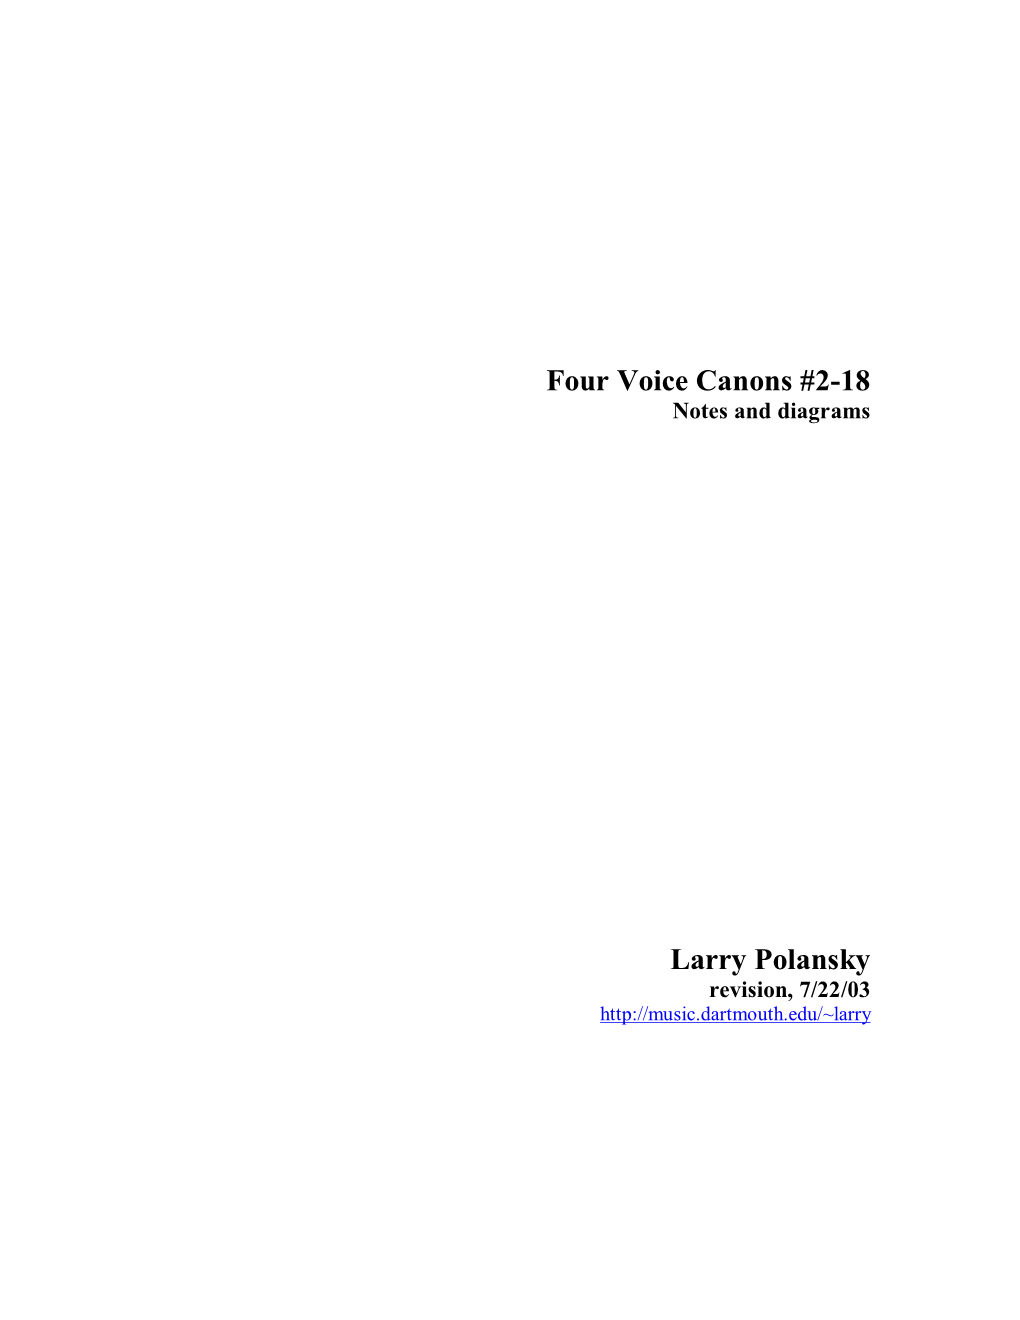 Four Voice Canons #2-18 Larry Polansky